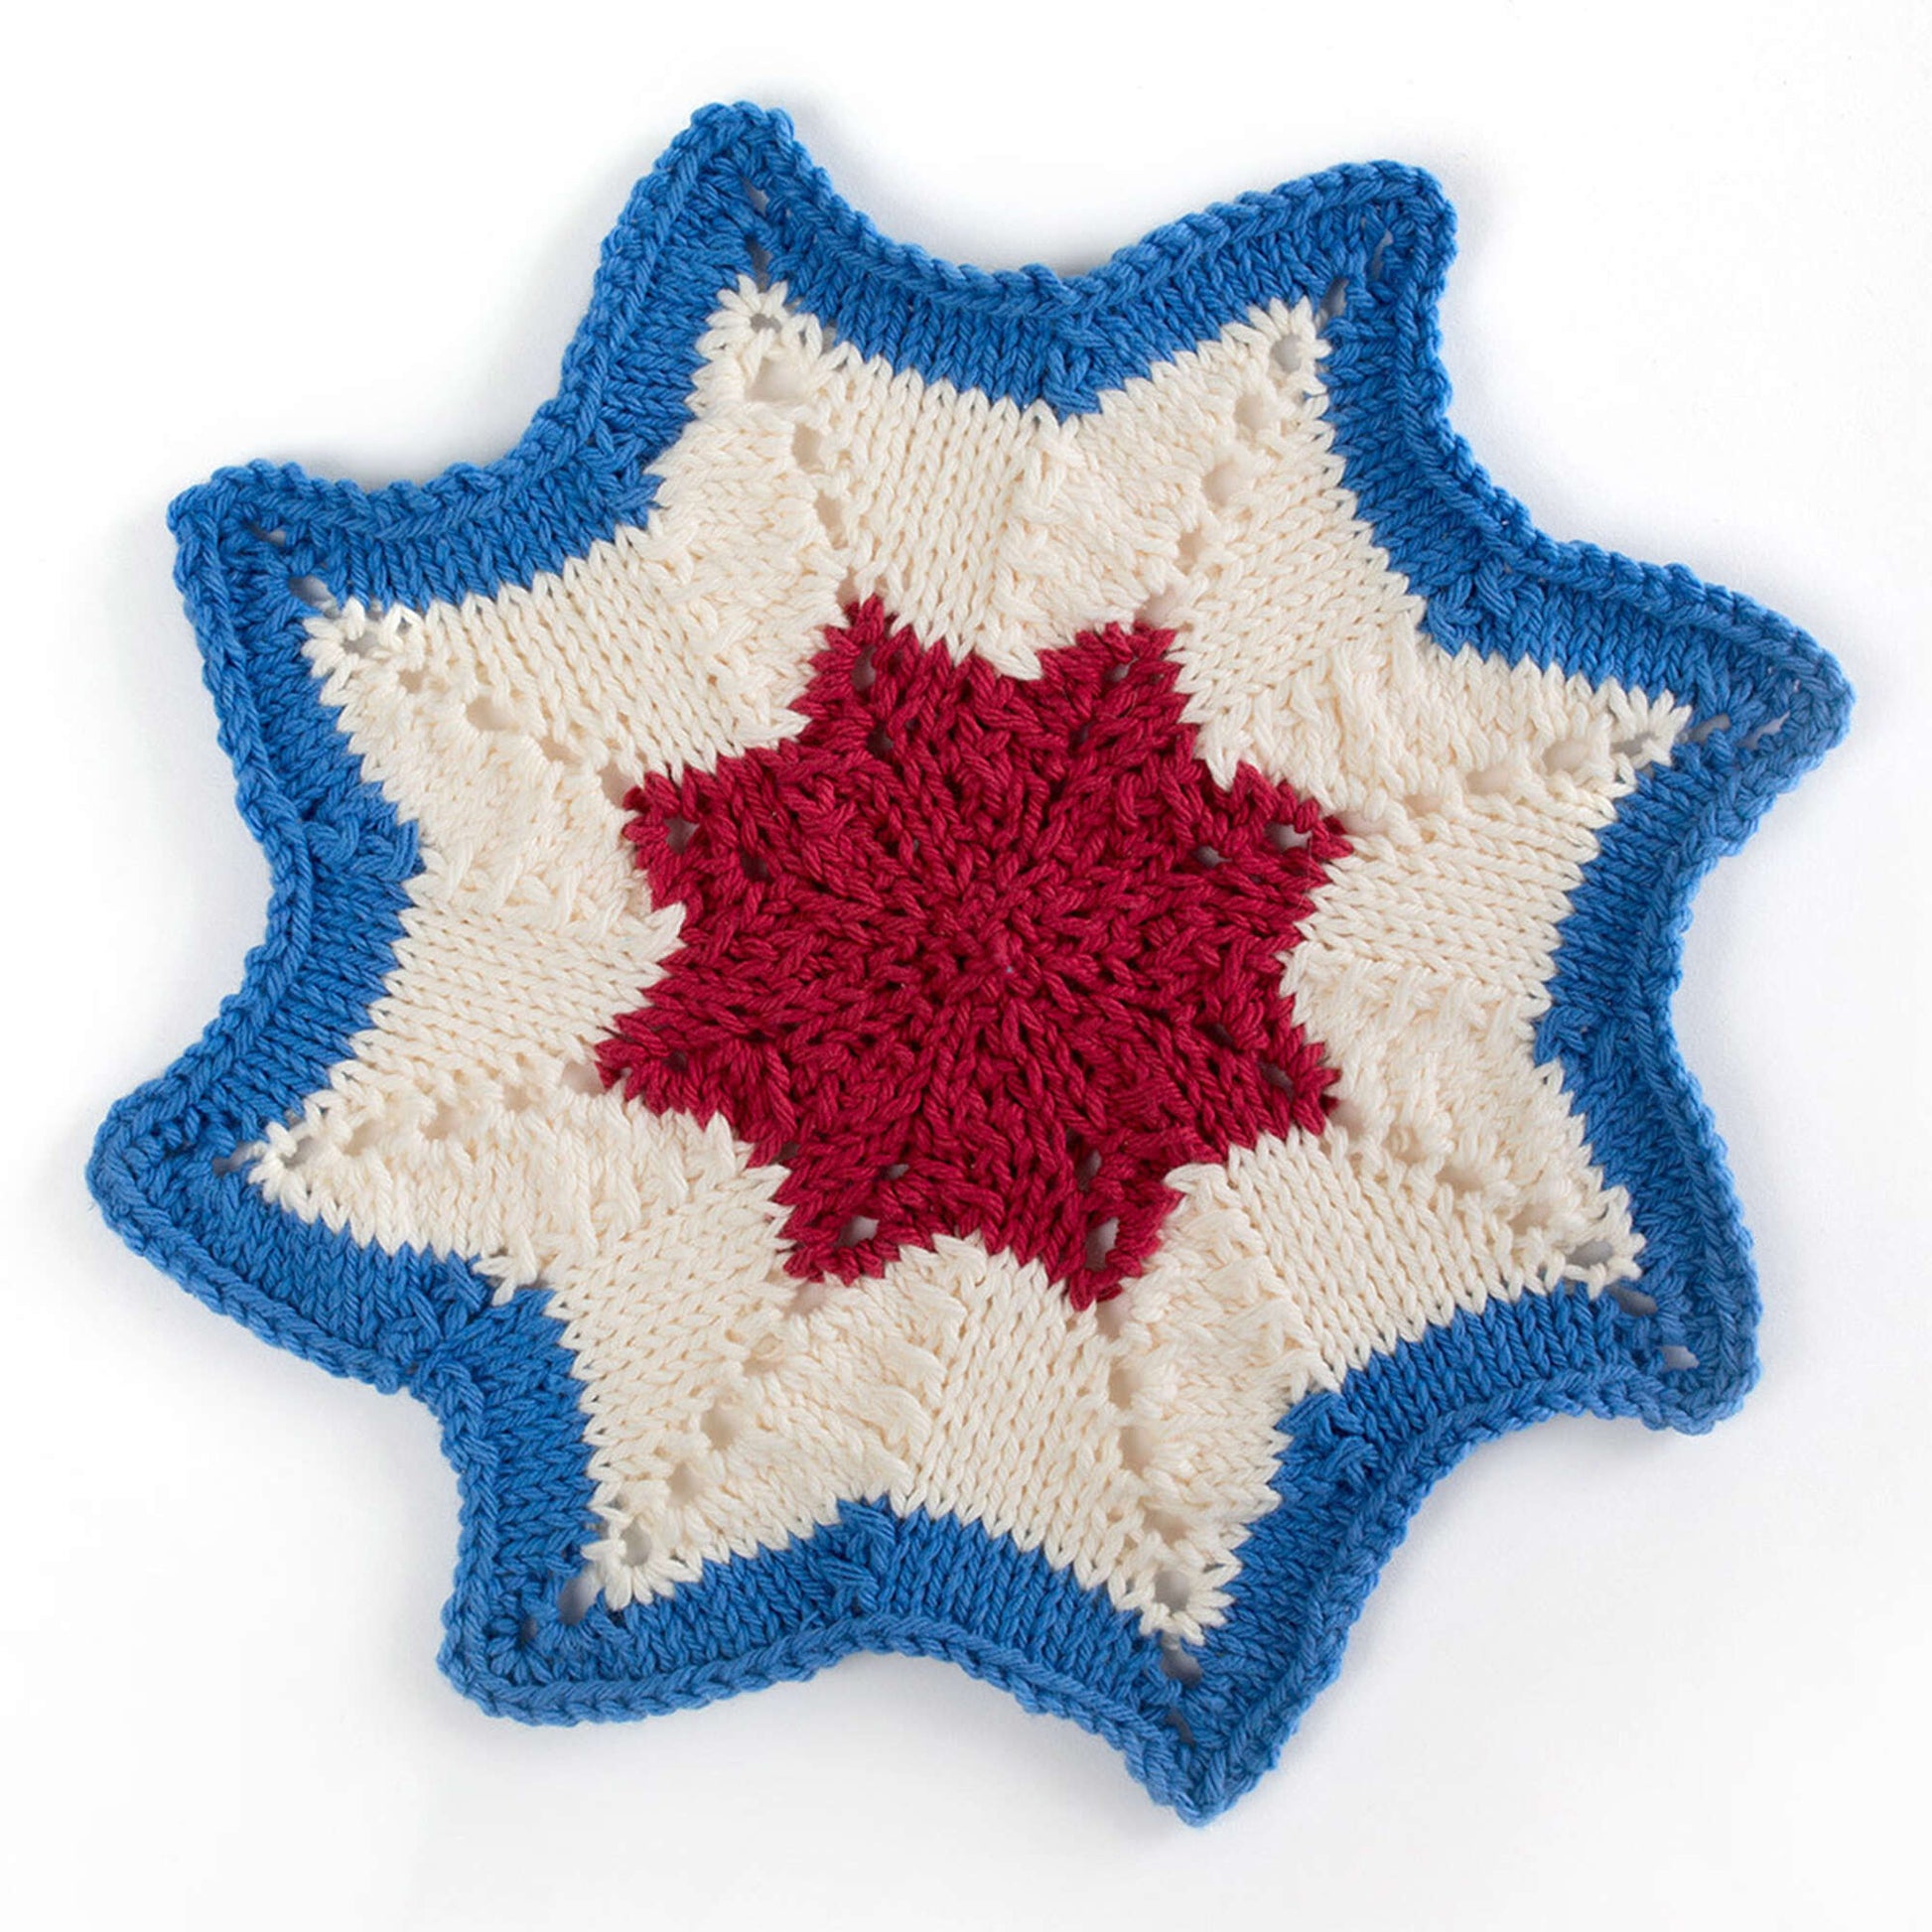 Free Lily Sugar'n Cream American Knit Dishcloth Pattern